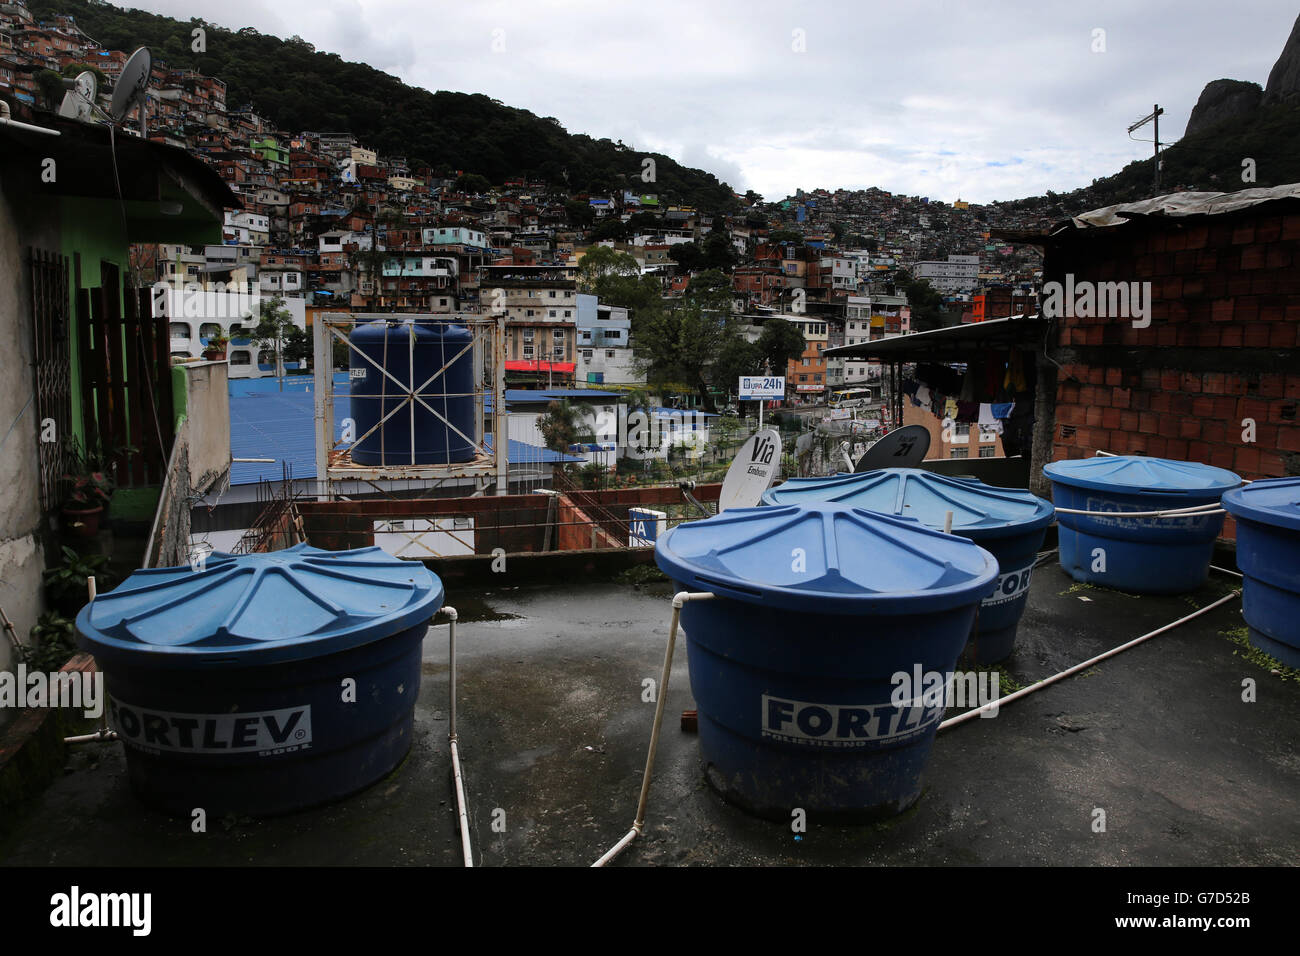 Rio de Janeiro, Brésil vues de la vie quotidienne à Rocinha Favela avec de grands butt d'eau qui servent l'eau quotidienne à chaque maison et une population d'environ 300,00 personnes Banque D'Images